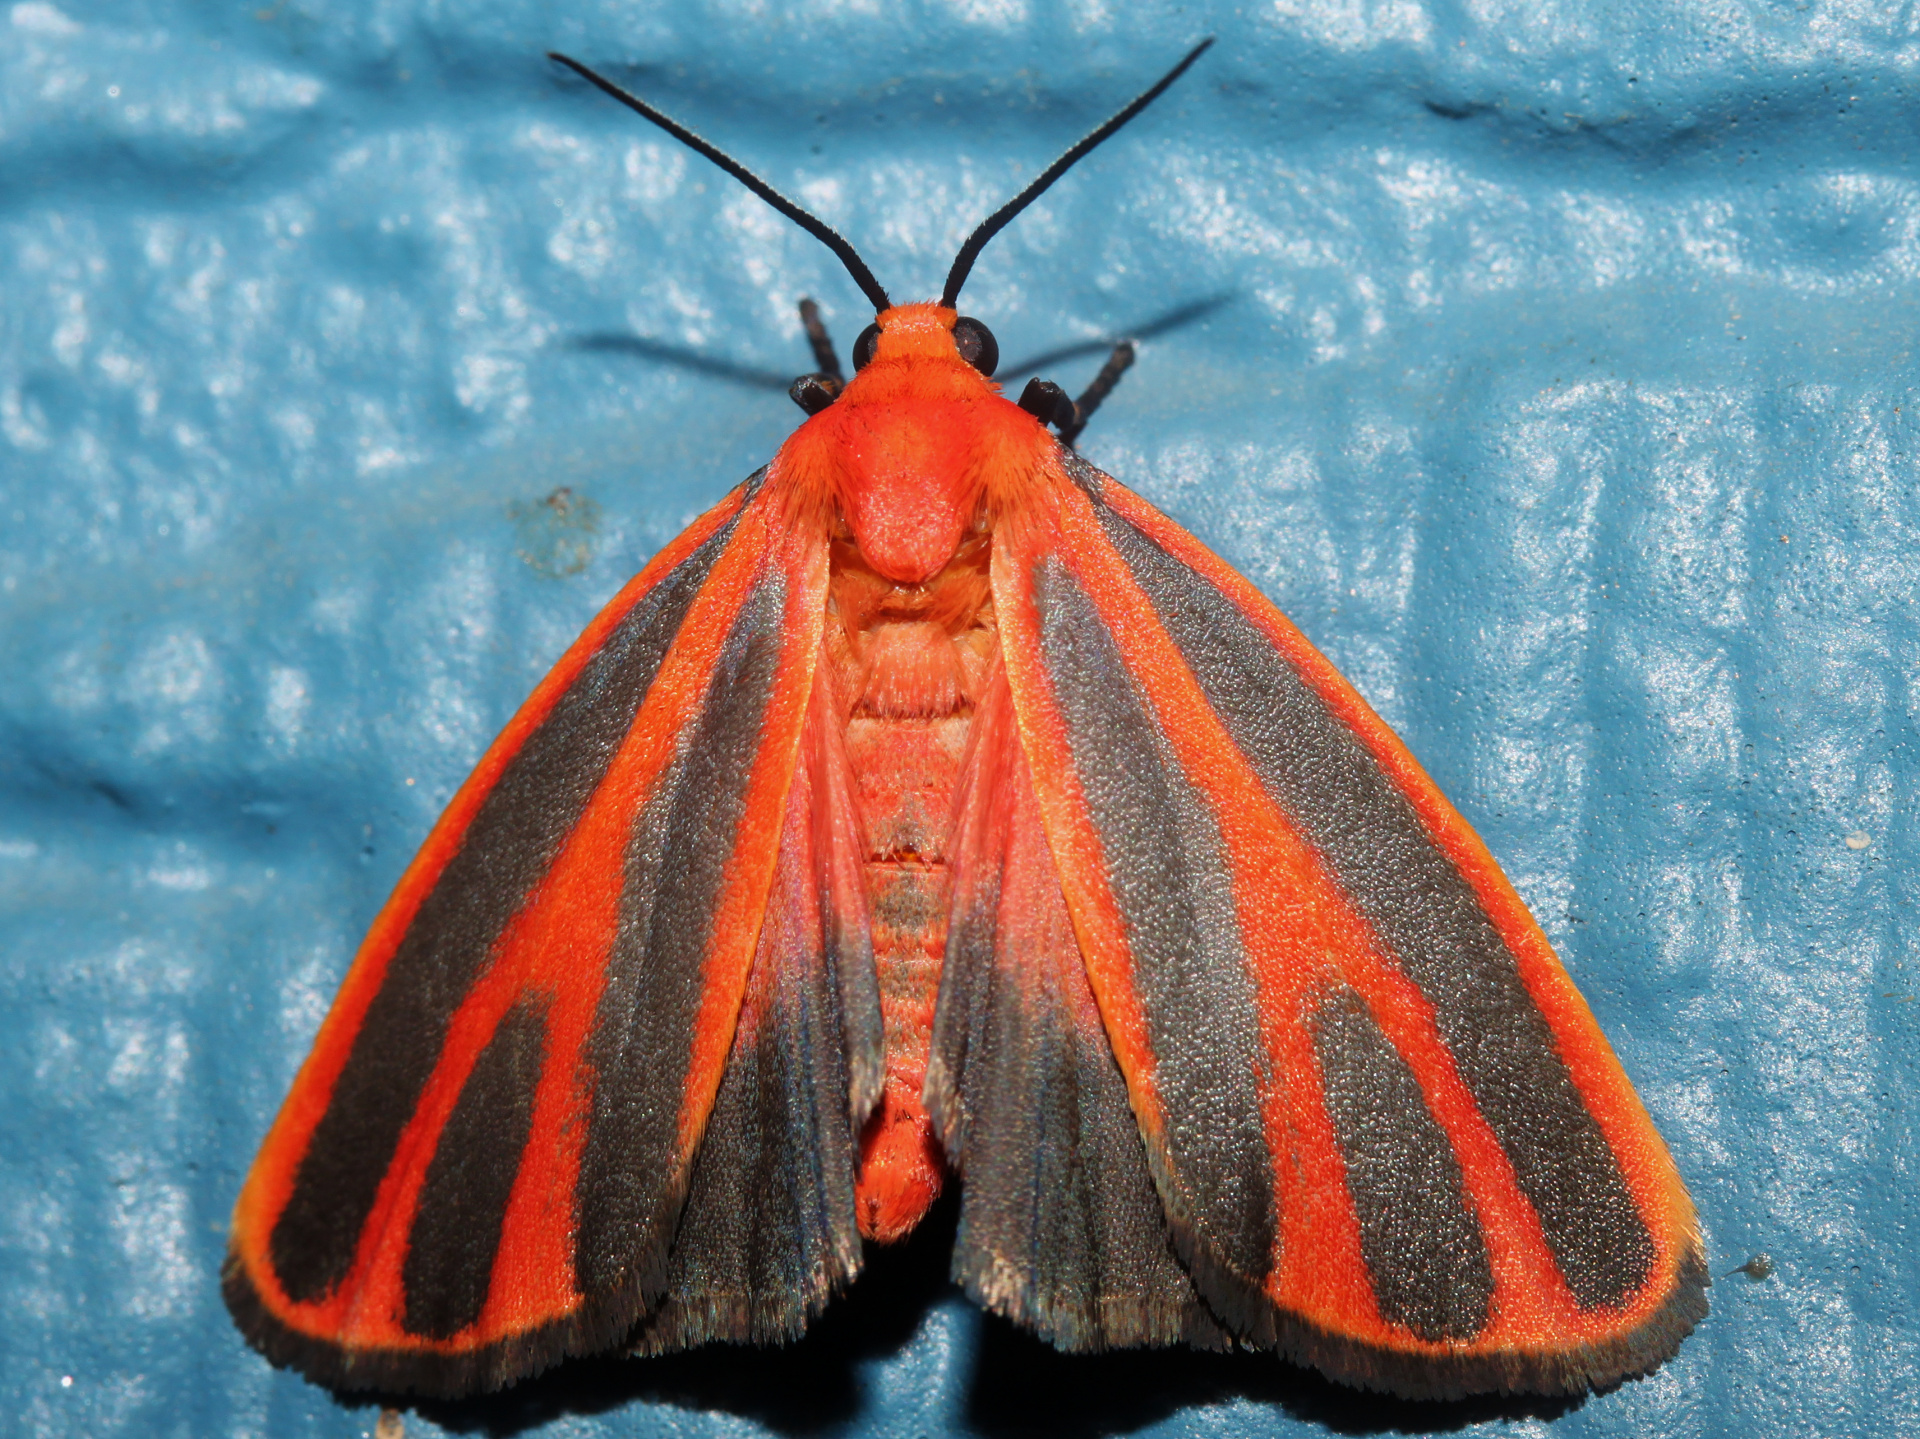 Hypoprepia miniata (Podróże » USA: Drogi nie obrane » Zwierzęta » Owady » Motyle i ćmy » Arctiidae)